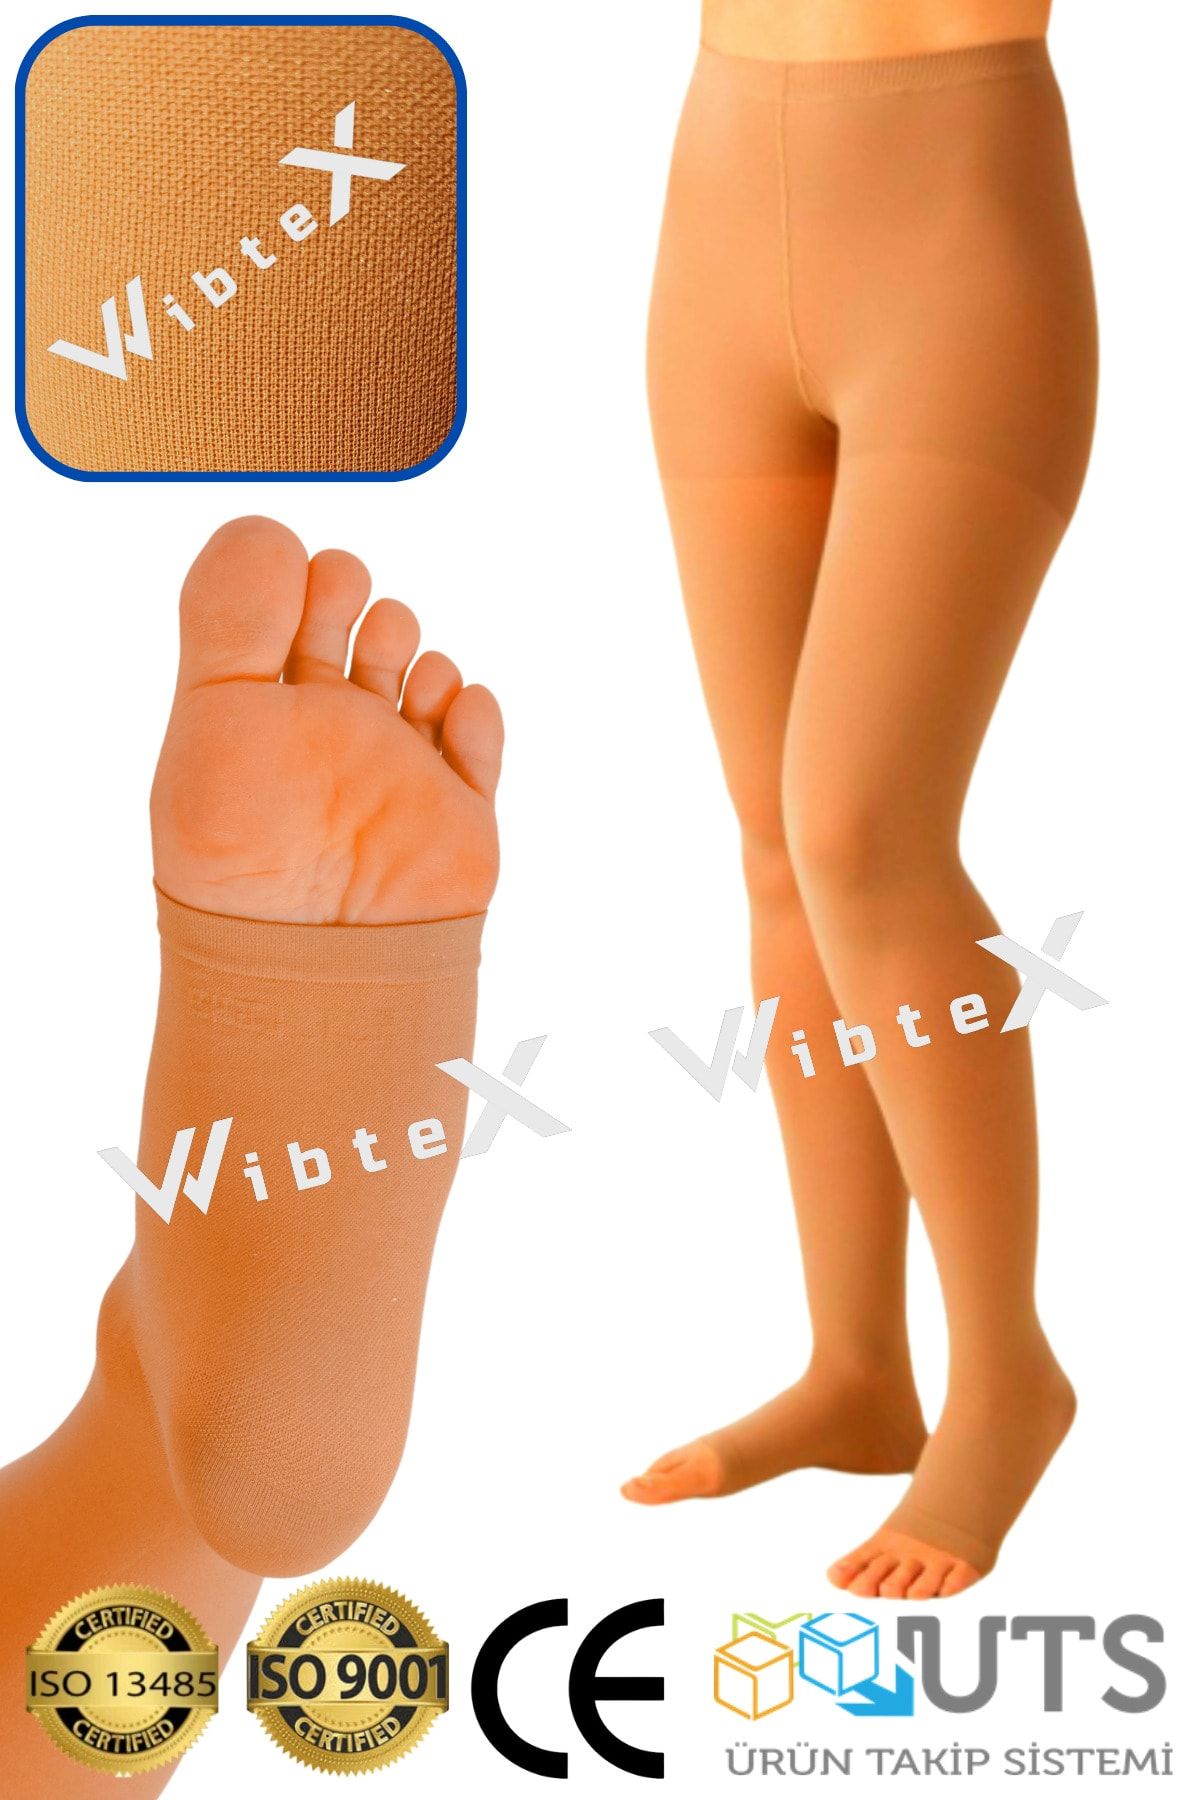 wibtex Külotlu Çorabı Burnu Açık (ten Rengi) Orta Basınç Ccl2(çift Bacak)